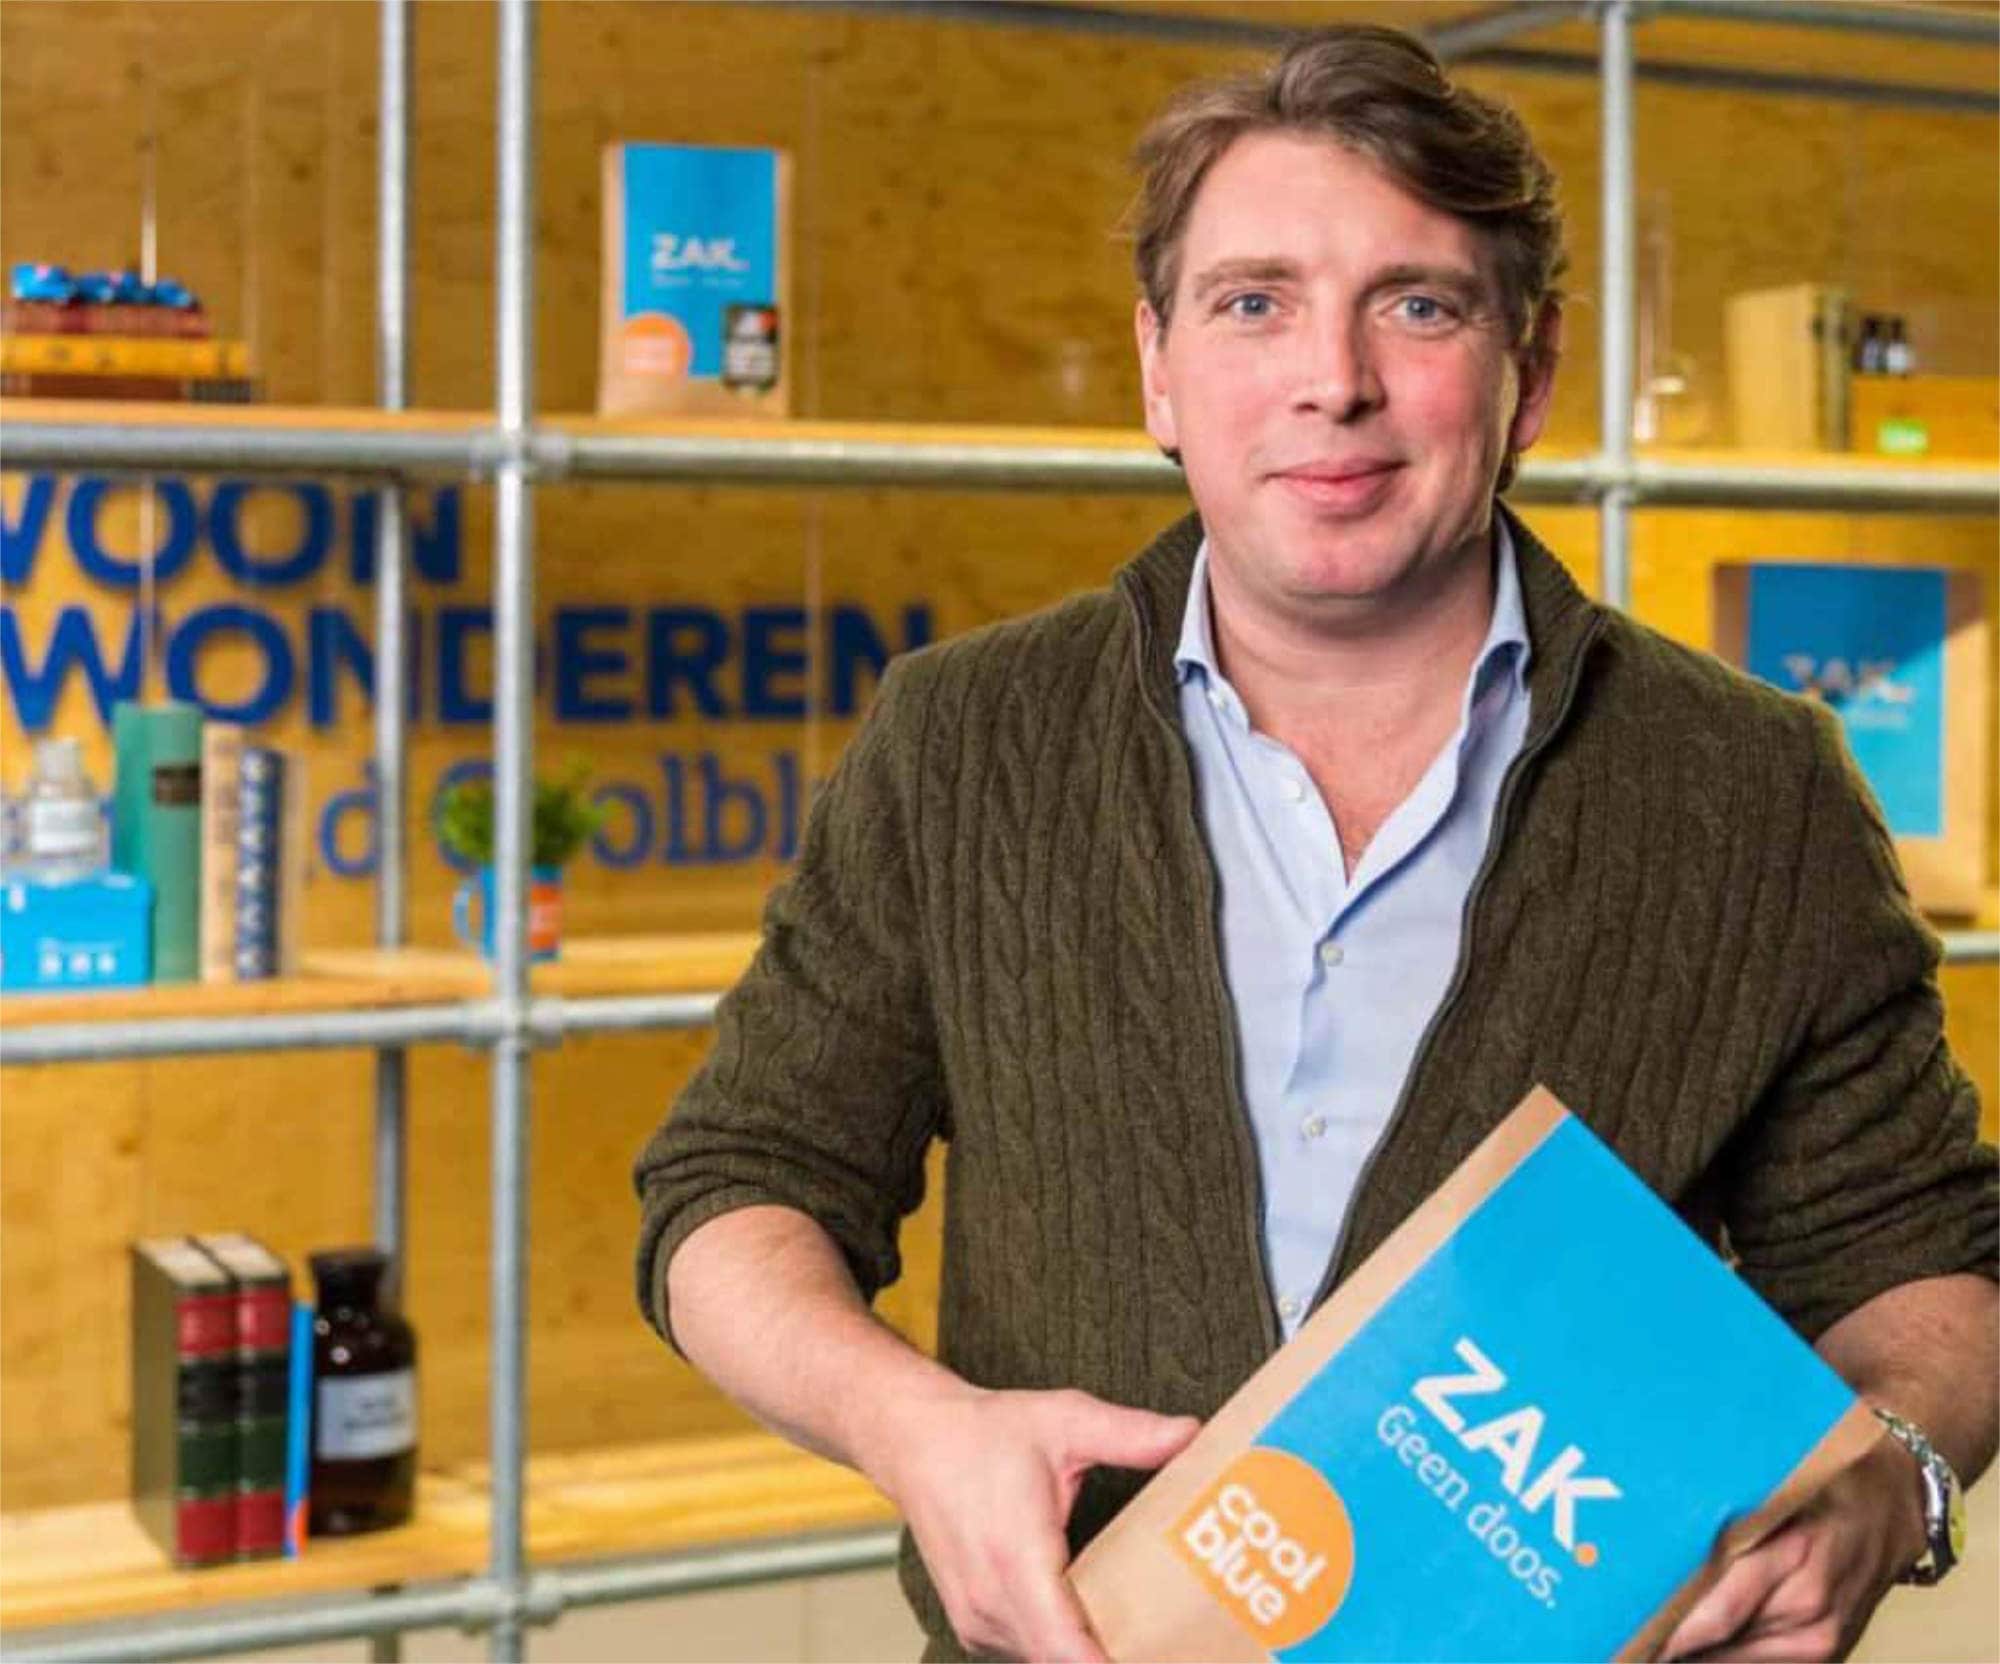 „Wir eröffnen stationäre Stores für unsere Kunden, damit sie Produkte in echt erleben können. In acht Produktwelten haben sie die Möglichkeit, Geräte anzufassen und auszuprobieren, denn sie wissen oft schon, welches Produkt sie suchen“, Pieter Zwart, CEO von Coolblue.